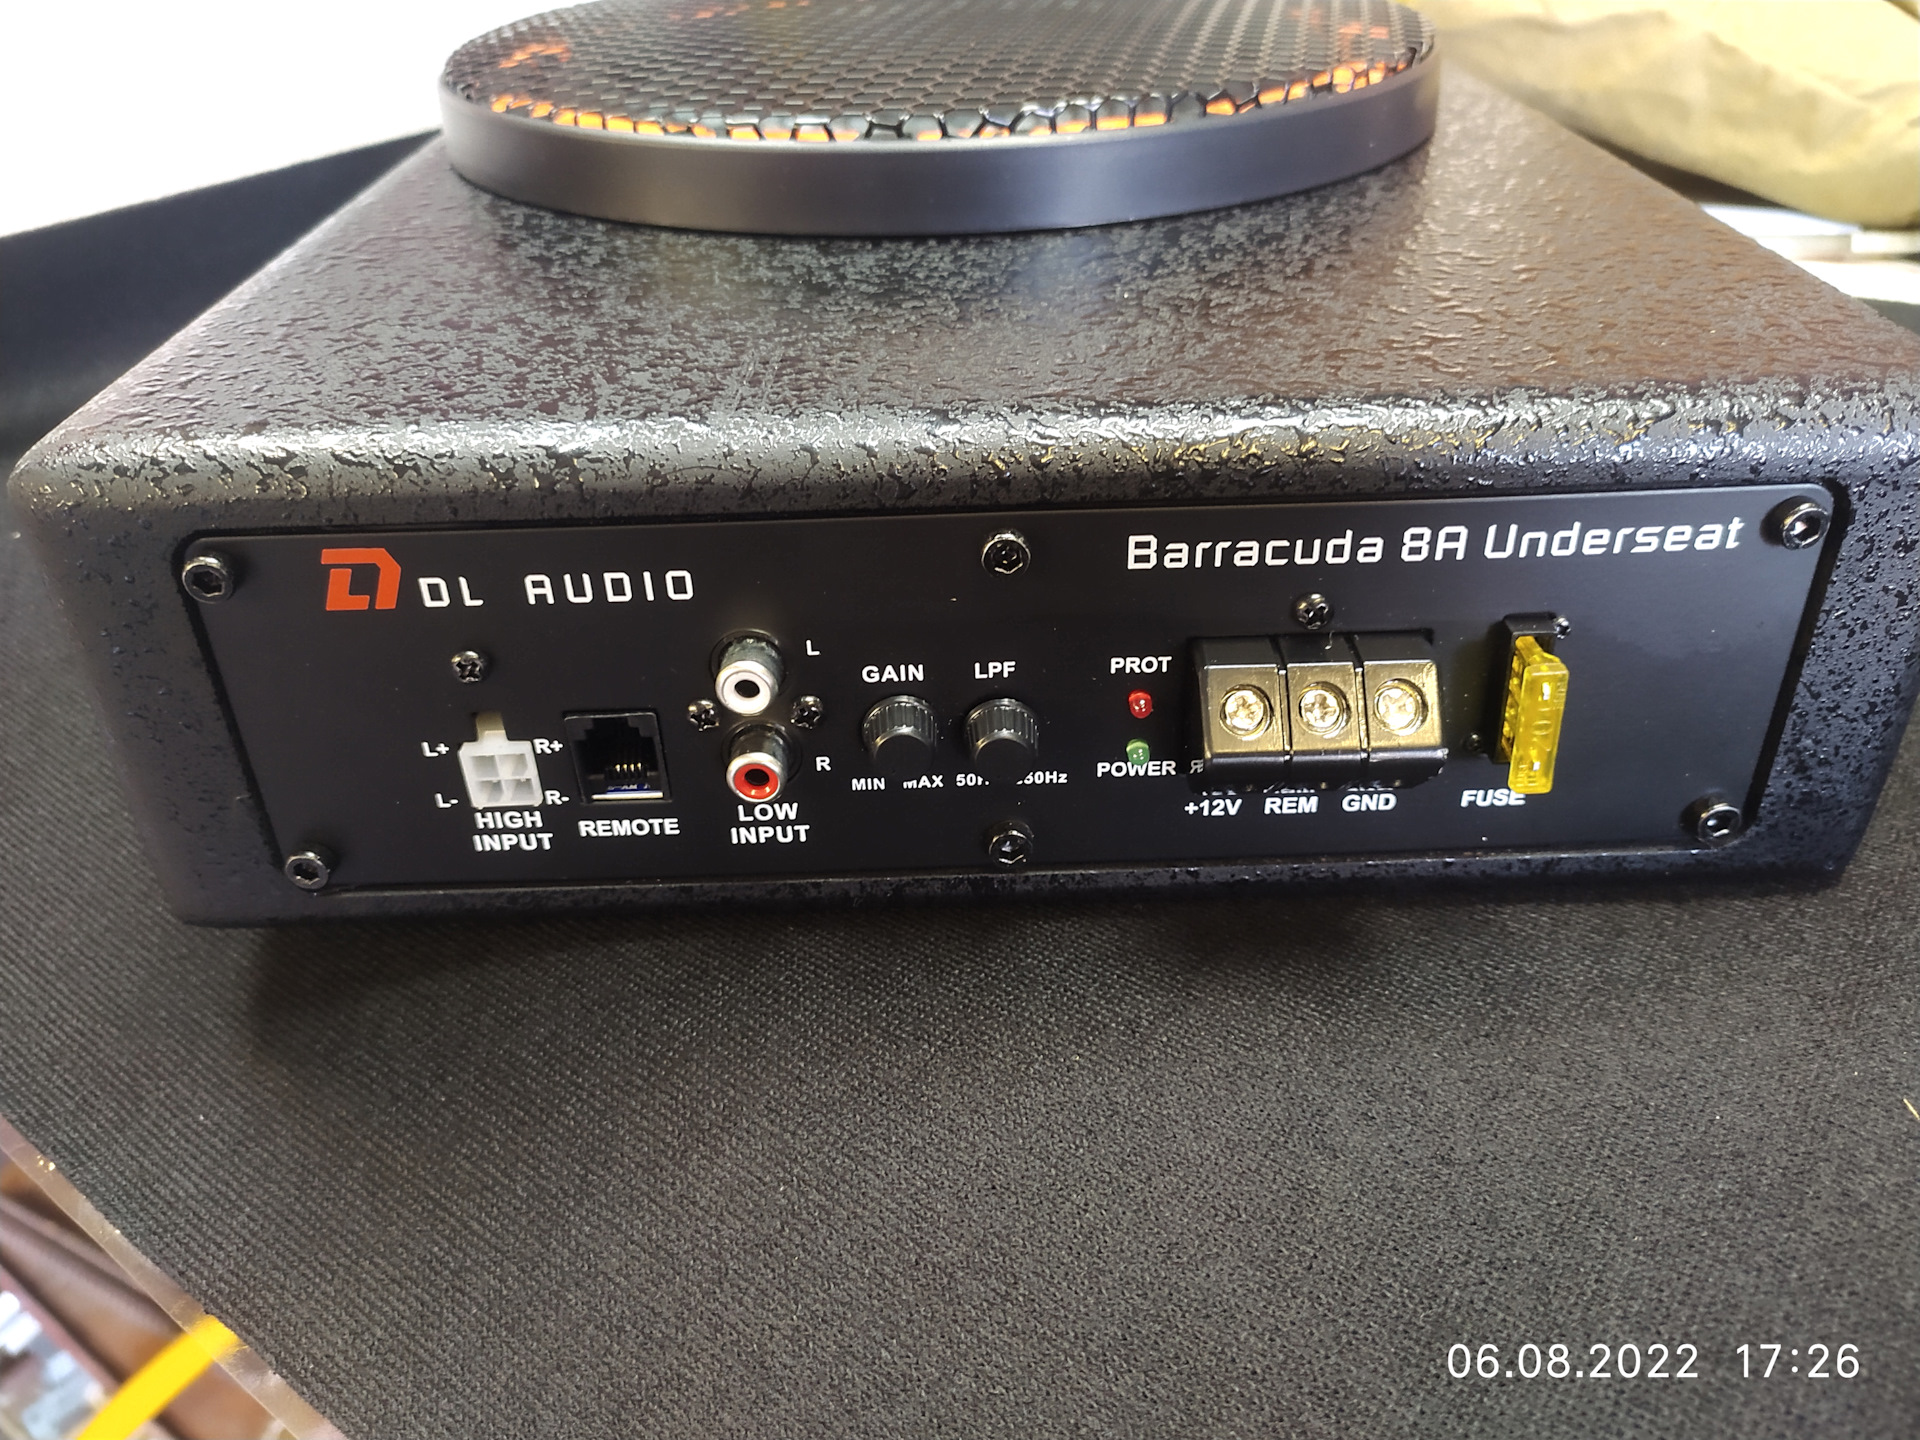 Dl barracuda 8 flat. DL Audio Barracuda 8a. Сабвуфер DL Barracuda 10”. Активный сабвуфер DL Audio Barracuda 8a Underseat. DJ Audio Barracuda 8.